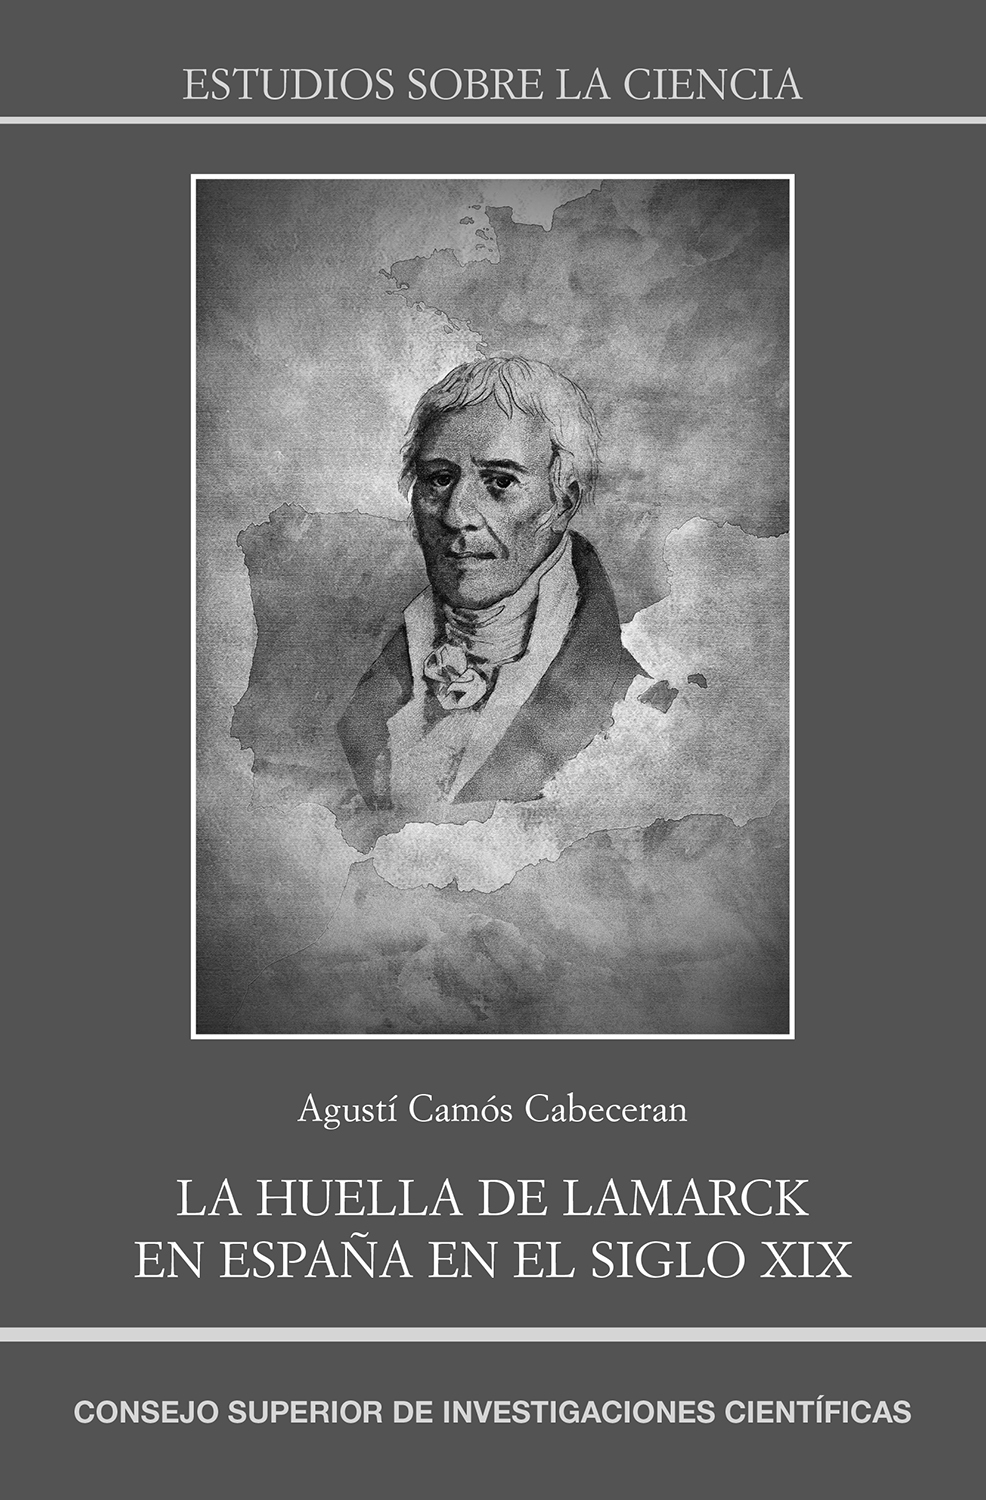 Imagen de portada del libro La huella de Lamarck en España en el siglo XIX